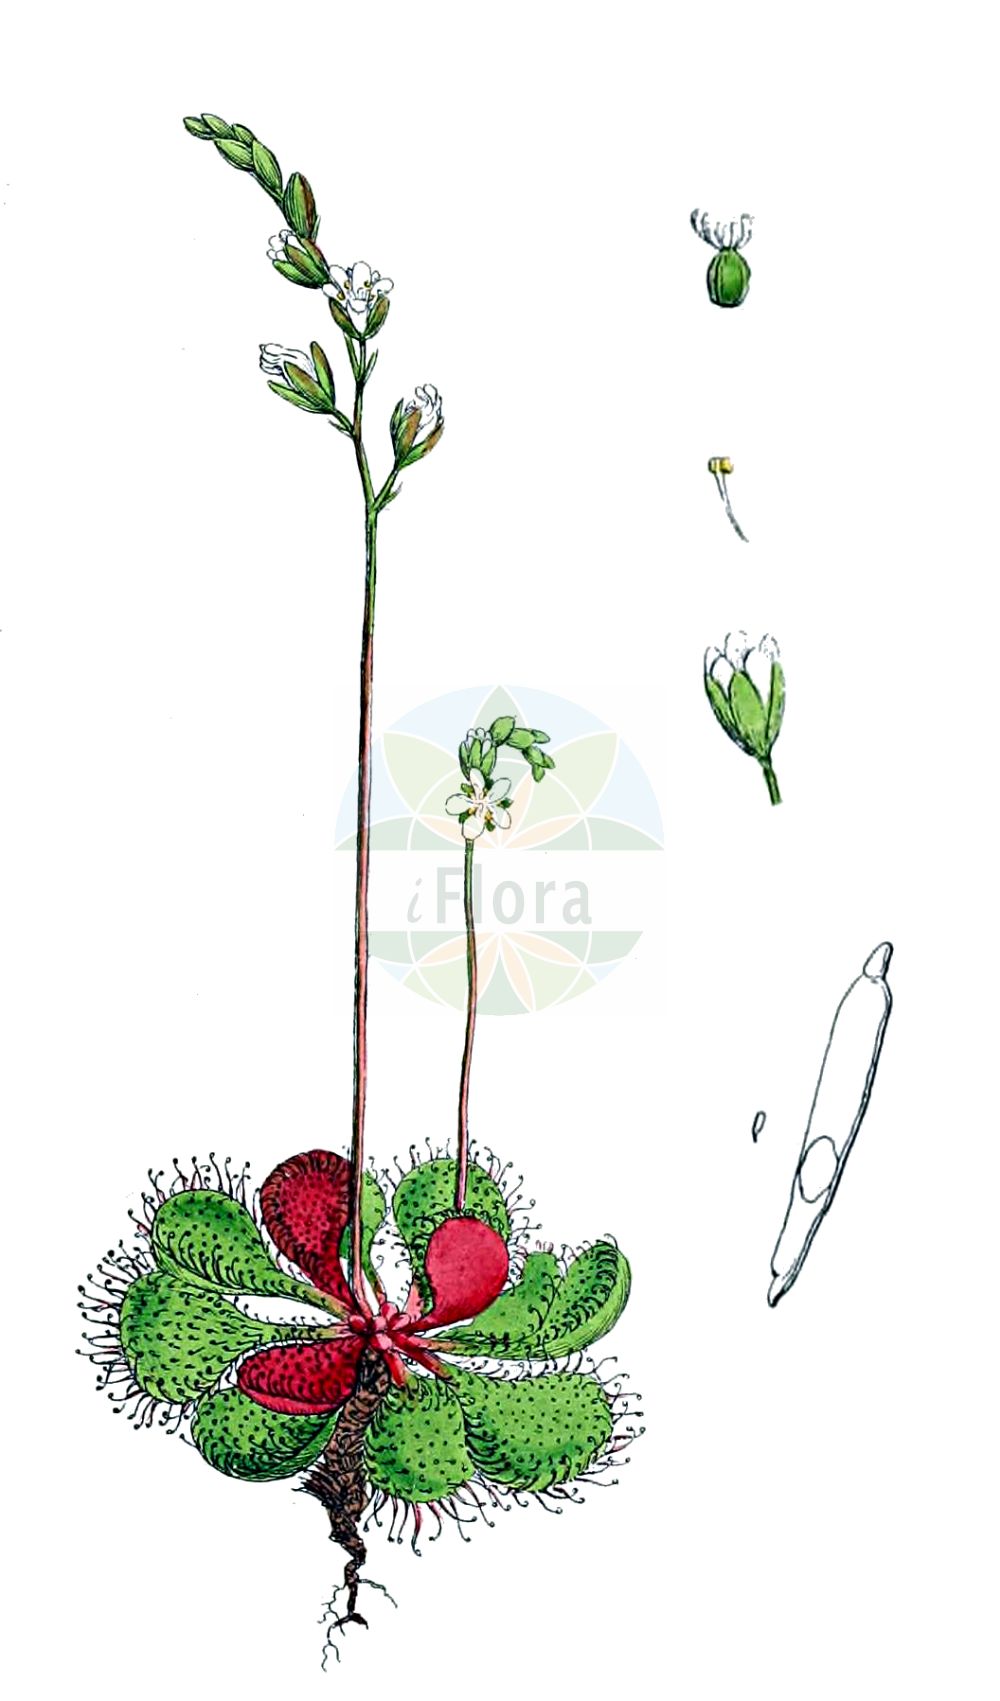 Historische Abbildung von Drosera rotundifolia (Rundblättriger Sonnentau - Round-leaved Sundew). Das Bild zeigt Blatt, Bluete, Frucht und Same. ---- Historical Drawing of Drosera rotundifolia (Rundblättriger Sonnentau - Round-leaved Sundew). The image is showing leaf, flower, fruit and seed.(Drosera rotundifolia,Rundblättriger Sonnentau,Round-leaved Sundew,Drosera corsica,Drosera rotundifolia,Rundblaettriger Sonnentau,Round-leaved Sundew,Common Sundew,Roundleaf Sundew,Sundew,Drosera,Sonnentau,Sundew,Droseraceae,Sonnentaugewächse,Sundew family,Blatt,Bluete,Frucht,Same,leaf,flower,fruit,seed,Sowerby (1790-1813))